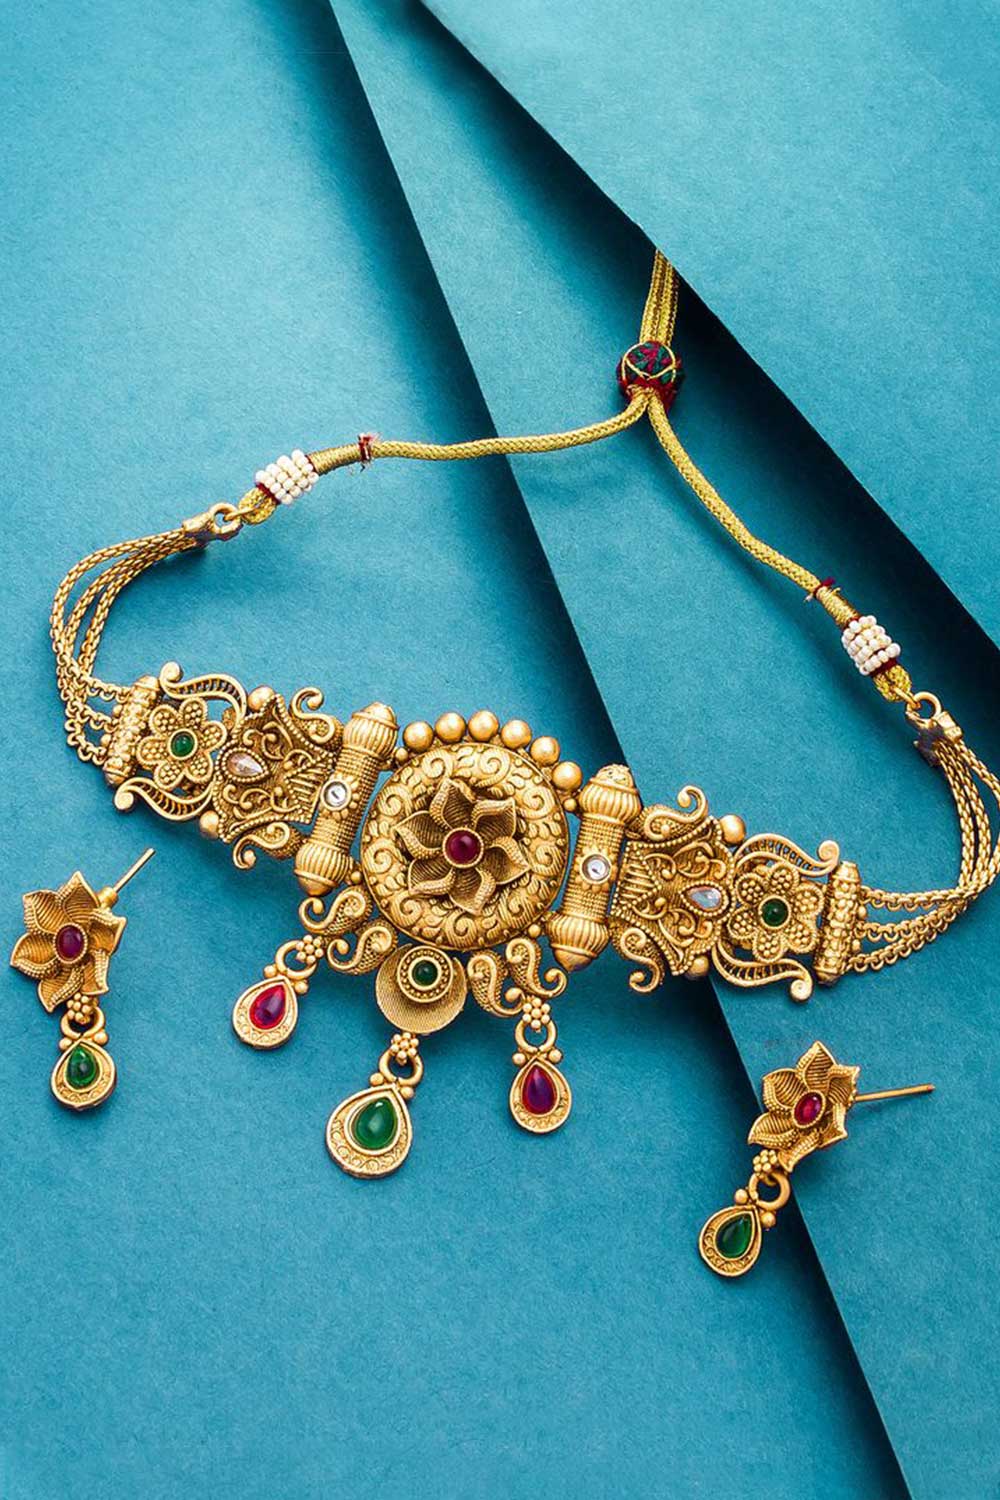 Buy Women's Copper Choker Necklace Set in Gold Online